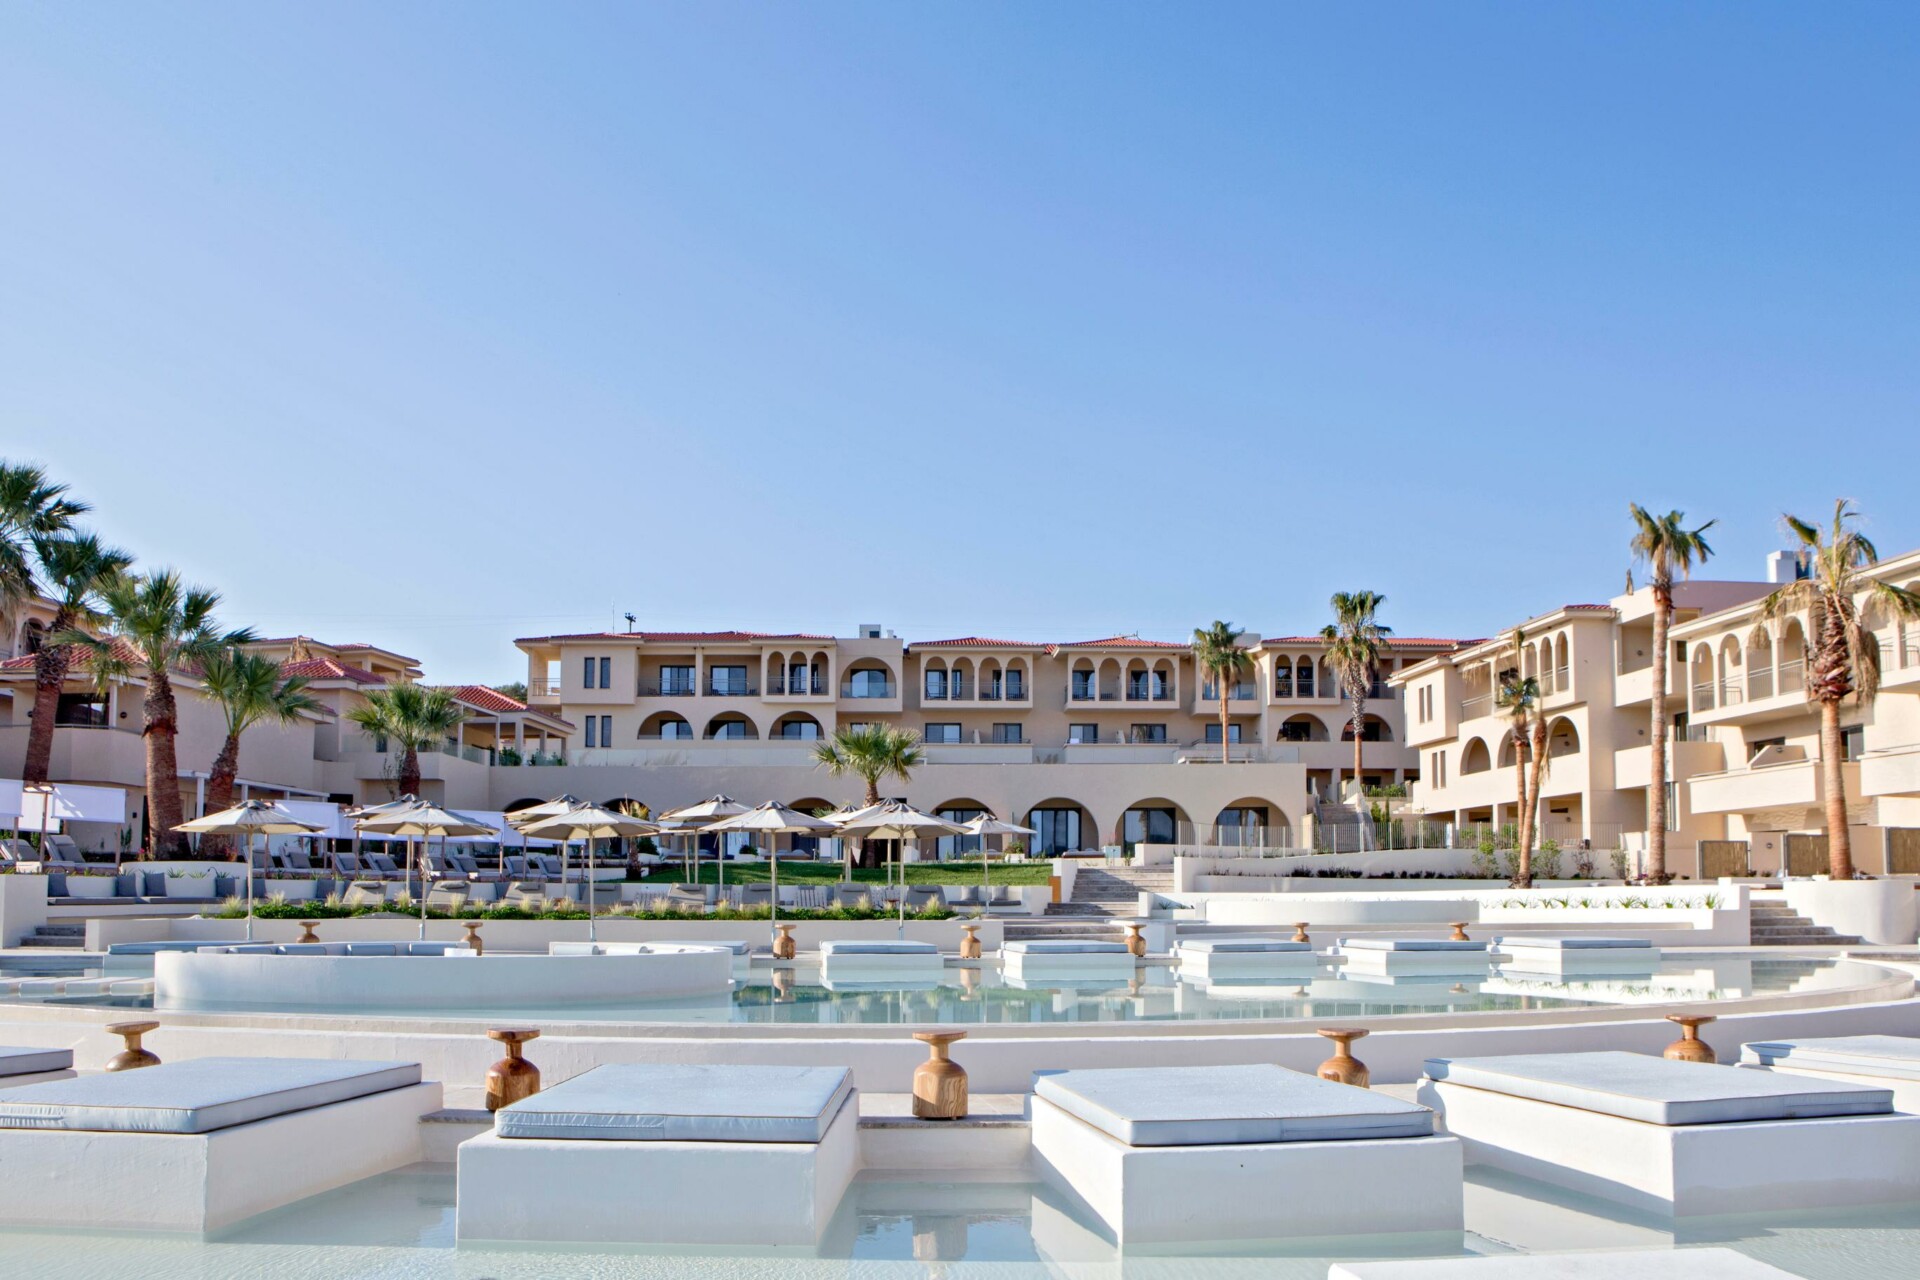 Το Cora Hotels που θα διαχειρίζεται η SWOT Hospitalities © ΔΤ